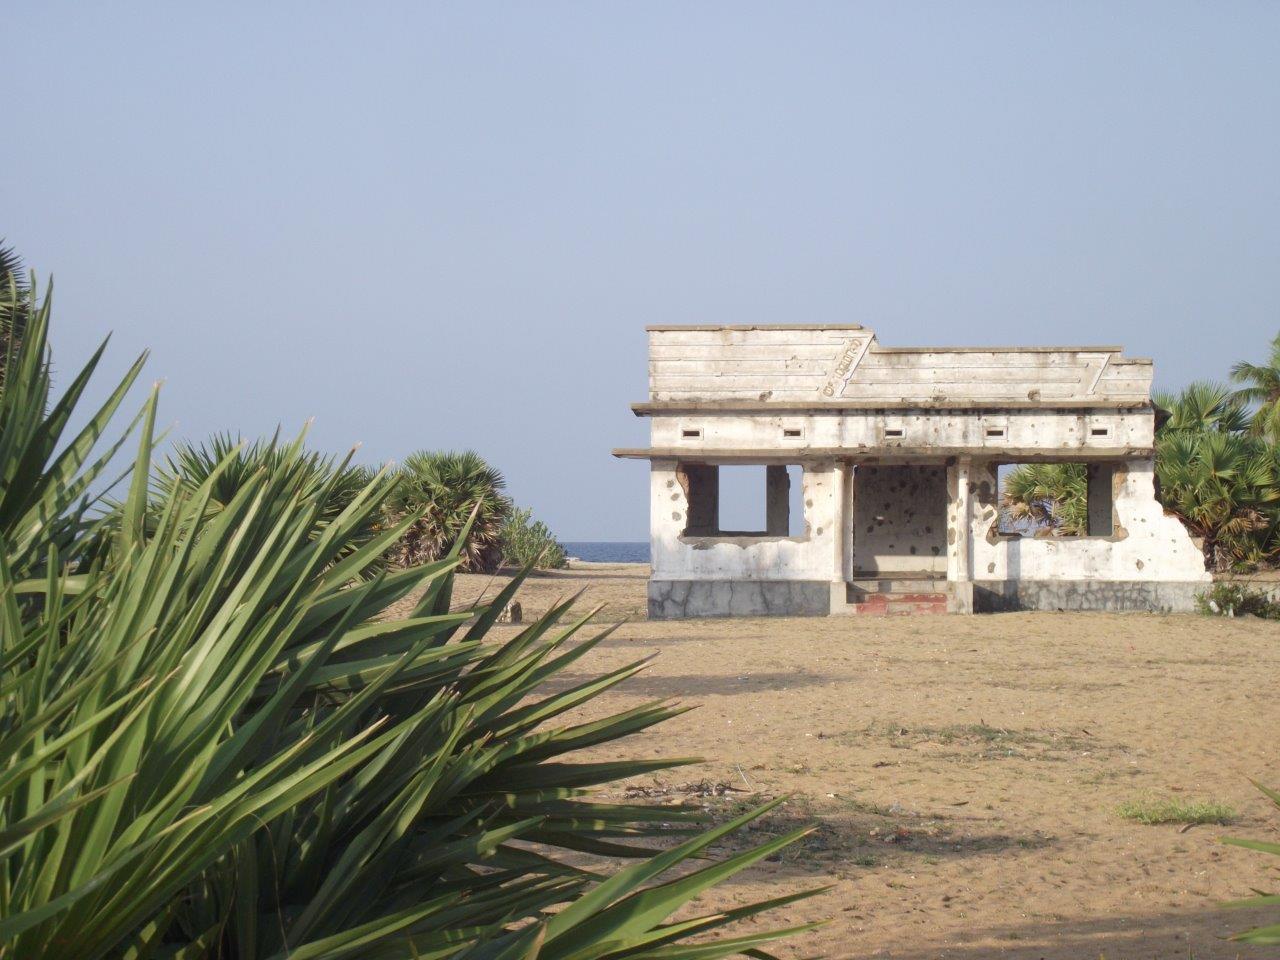 Vue d’une maison située au bord de l’océan et endommagée par des impacts de balle.